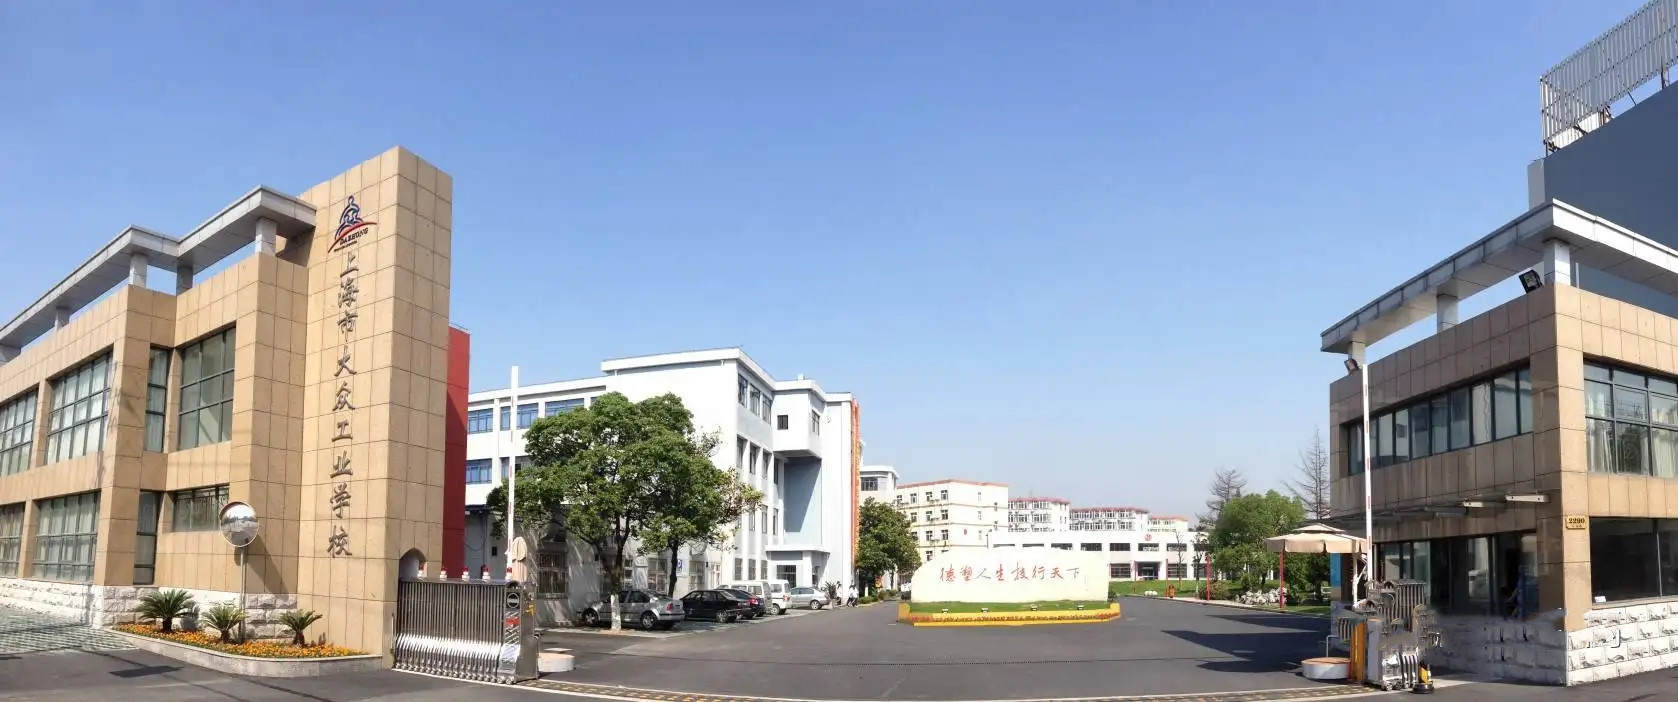 上海冶金工业学校旧址图片